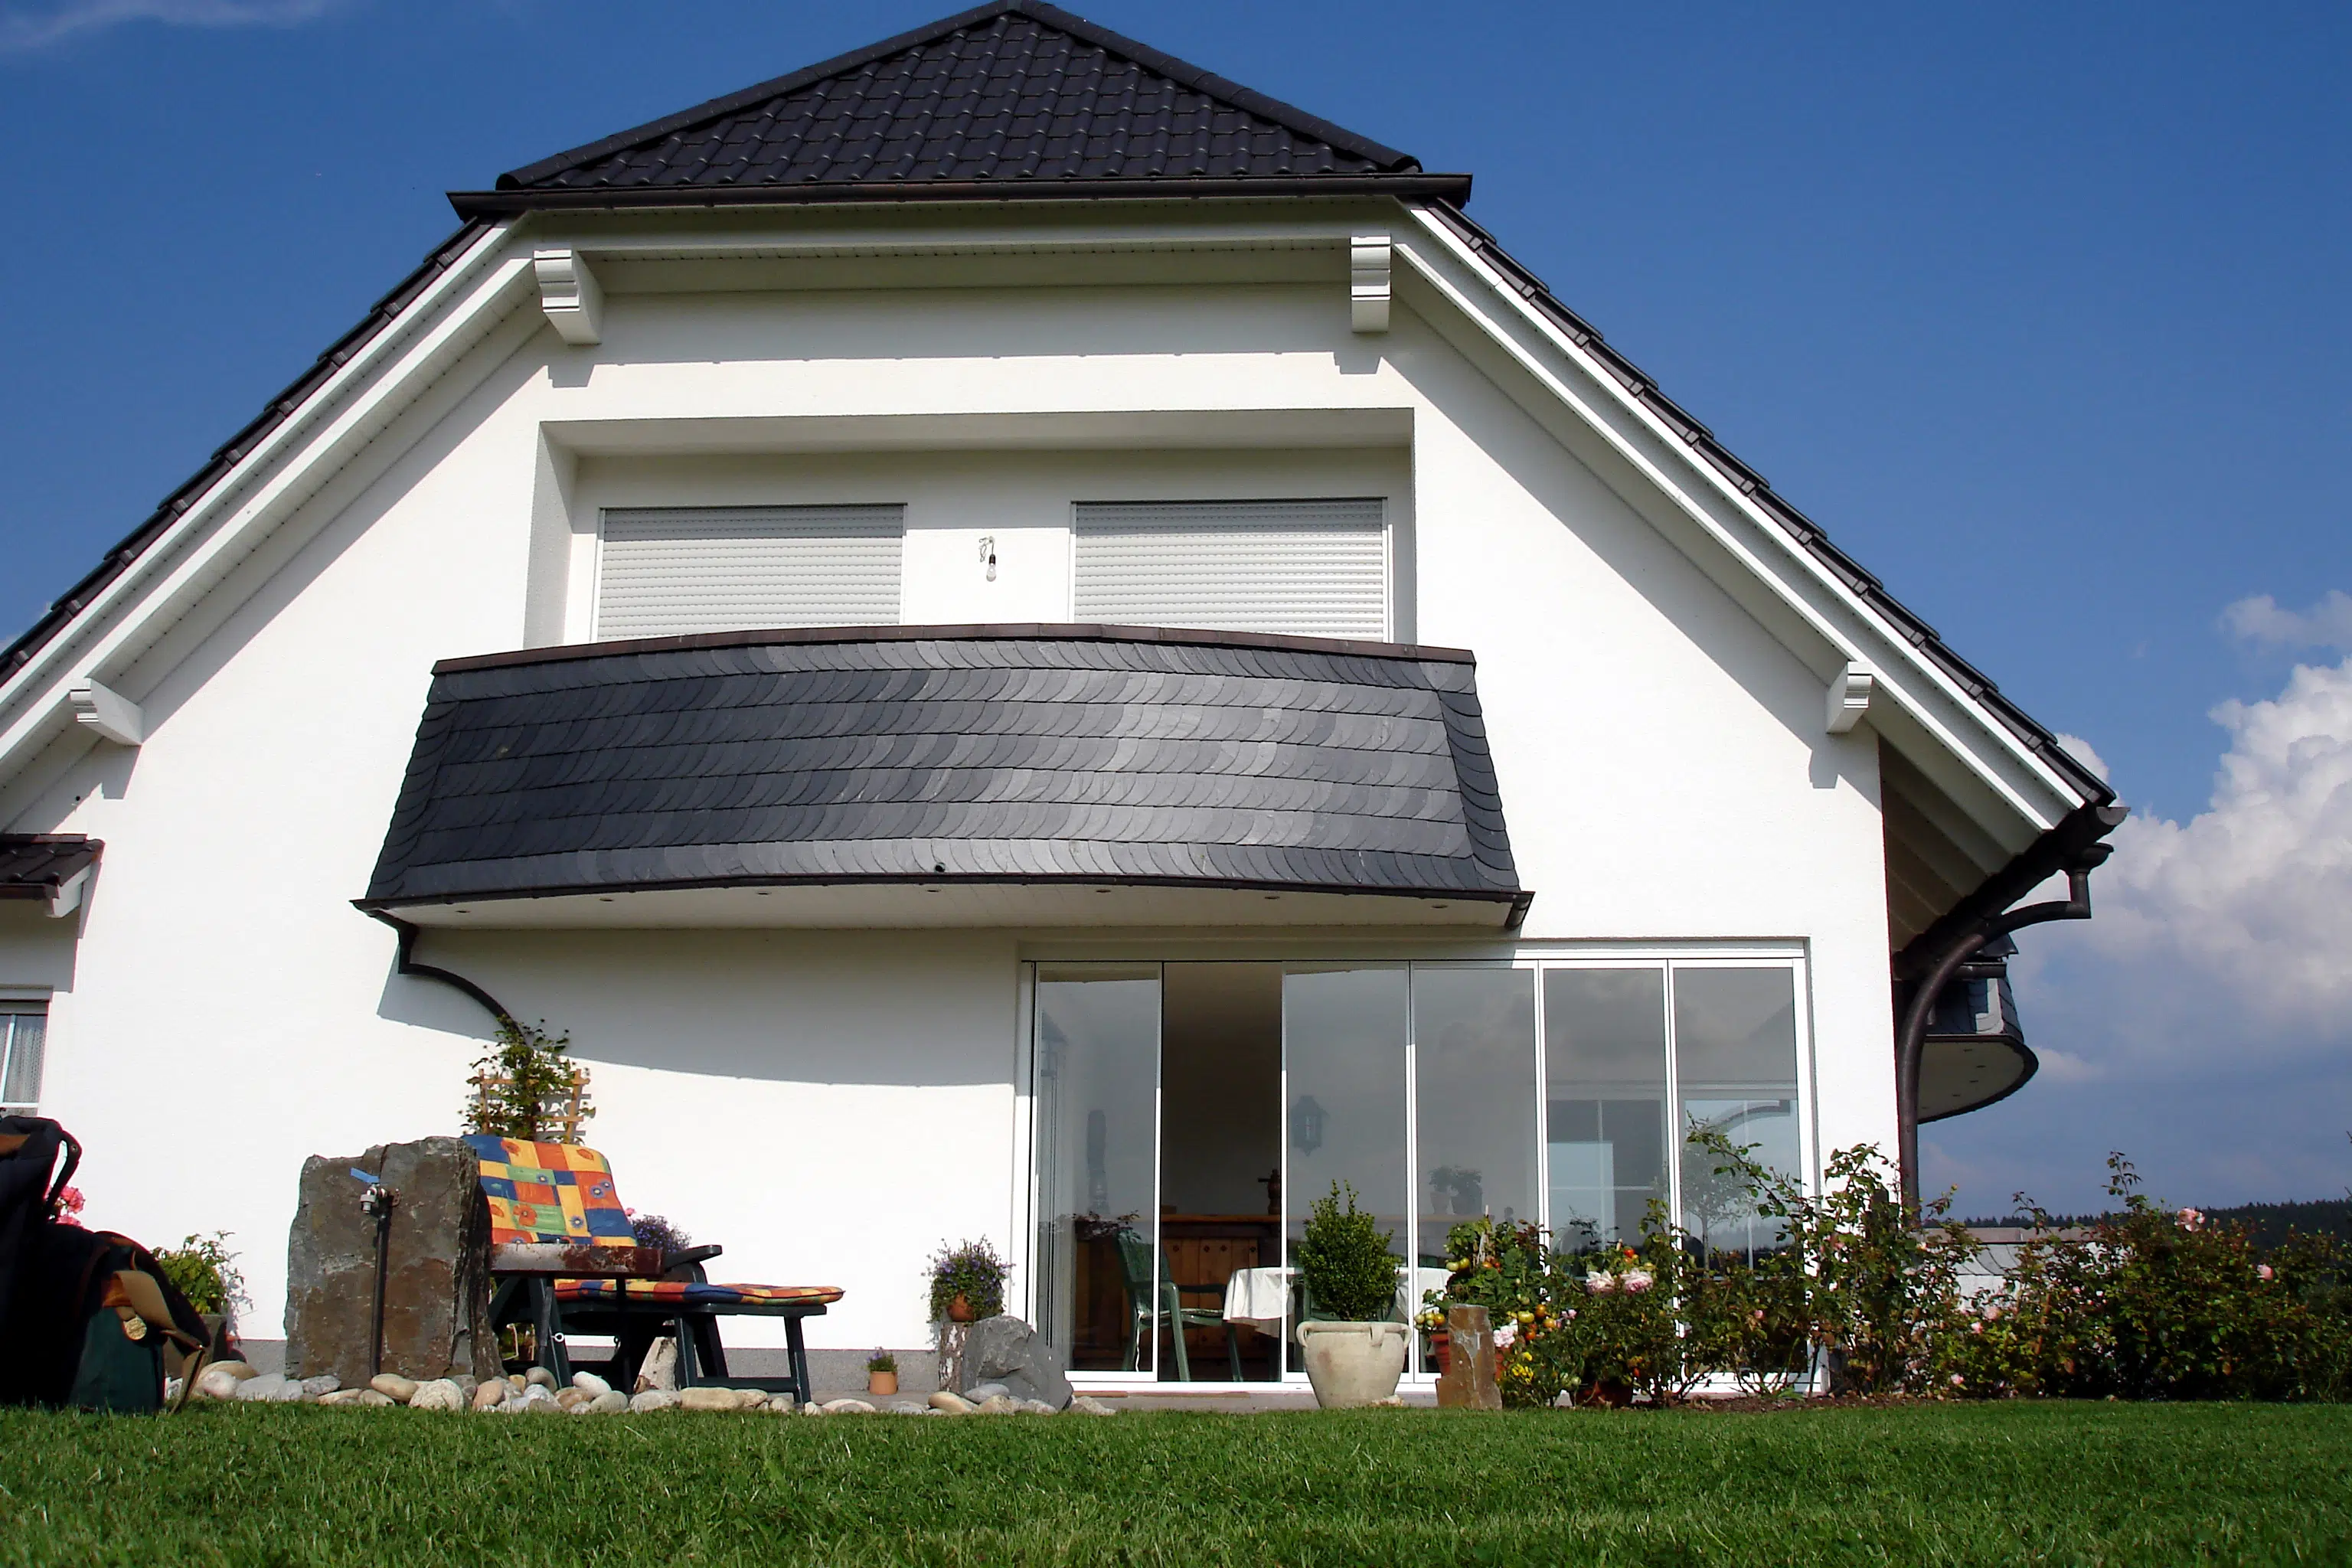 Terrasse vor stärkerem Wind schützen